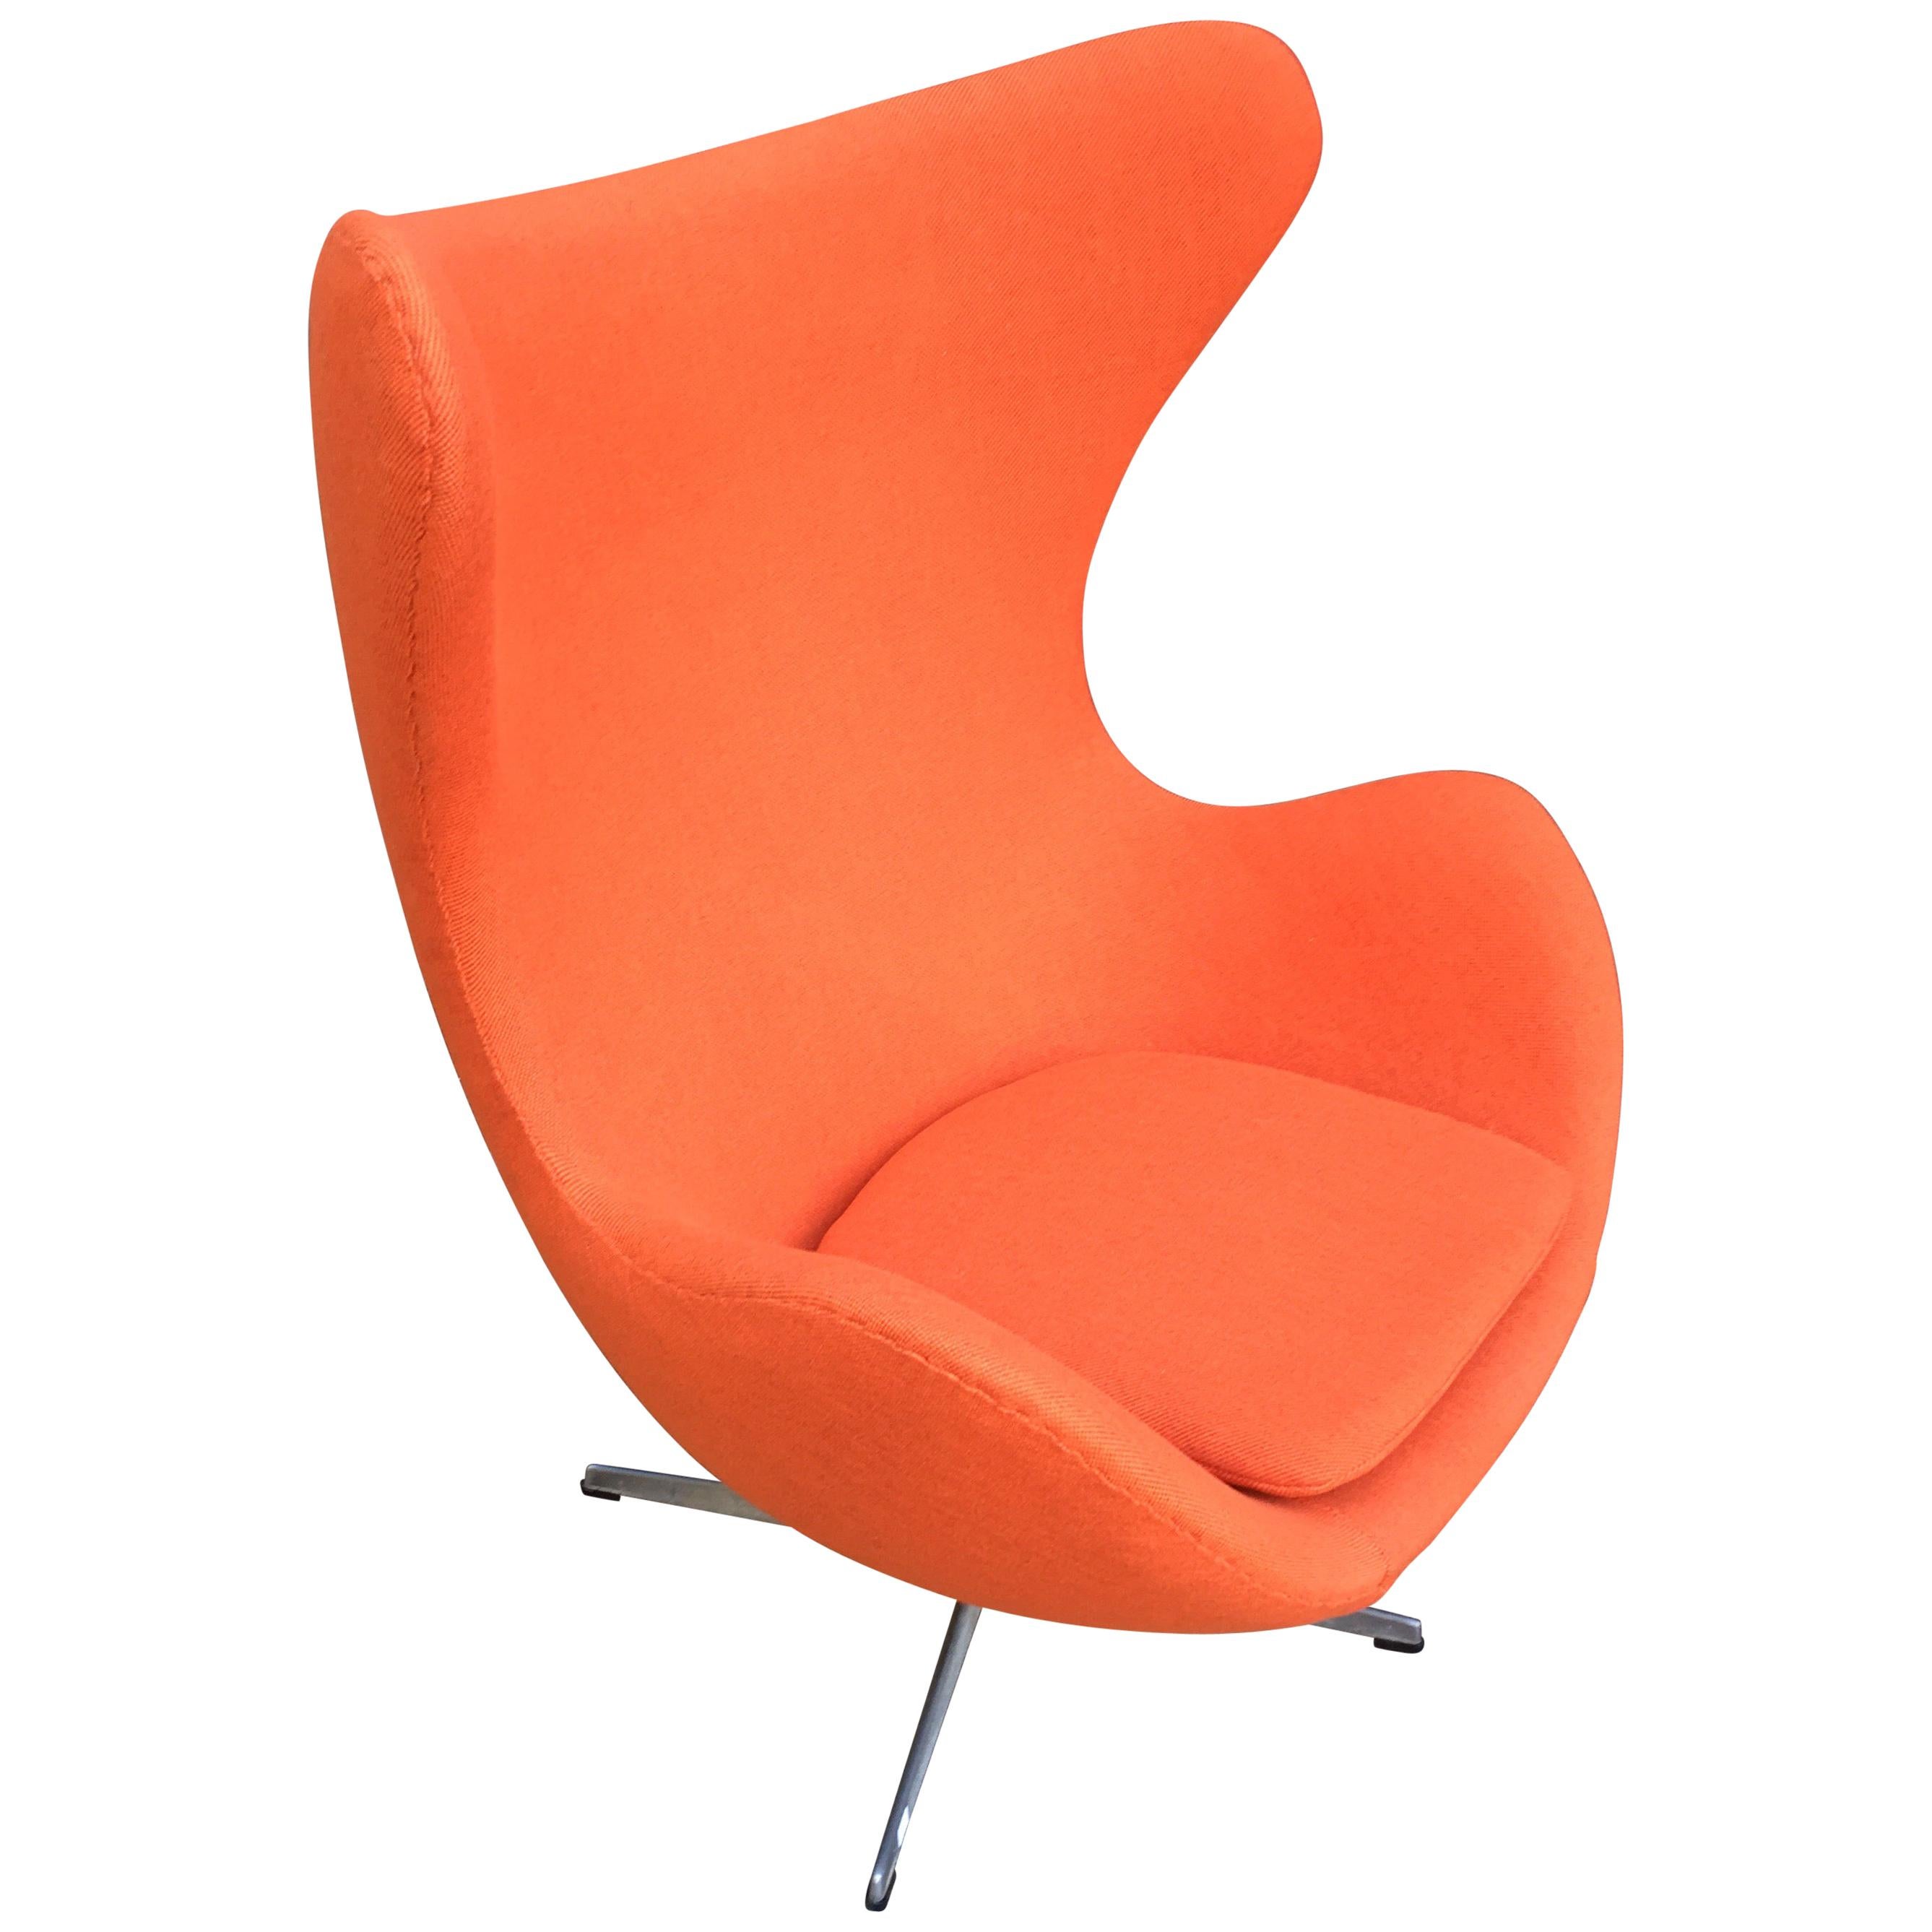 Arne Jacobsen Egg Chair for Fritz Hansen in Any Fabric